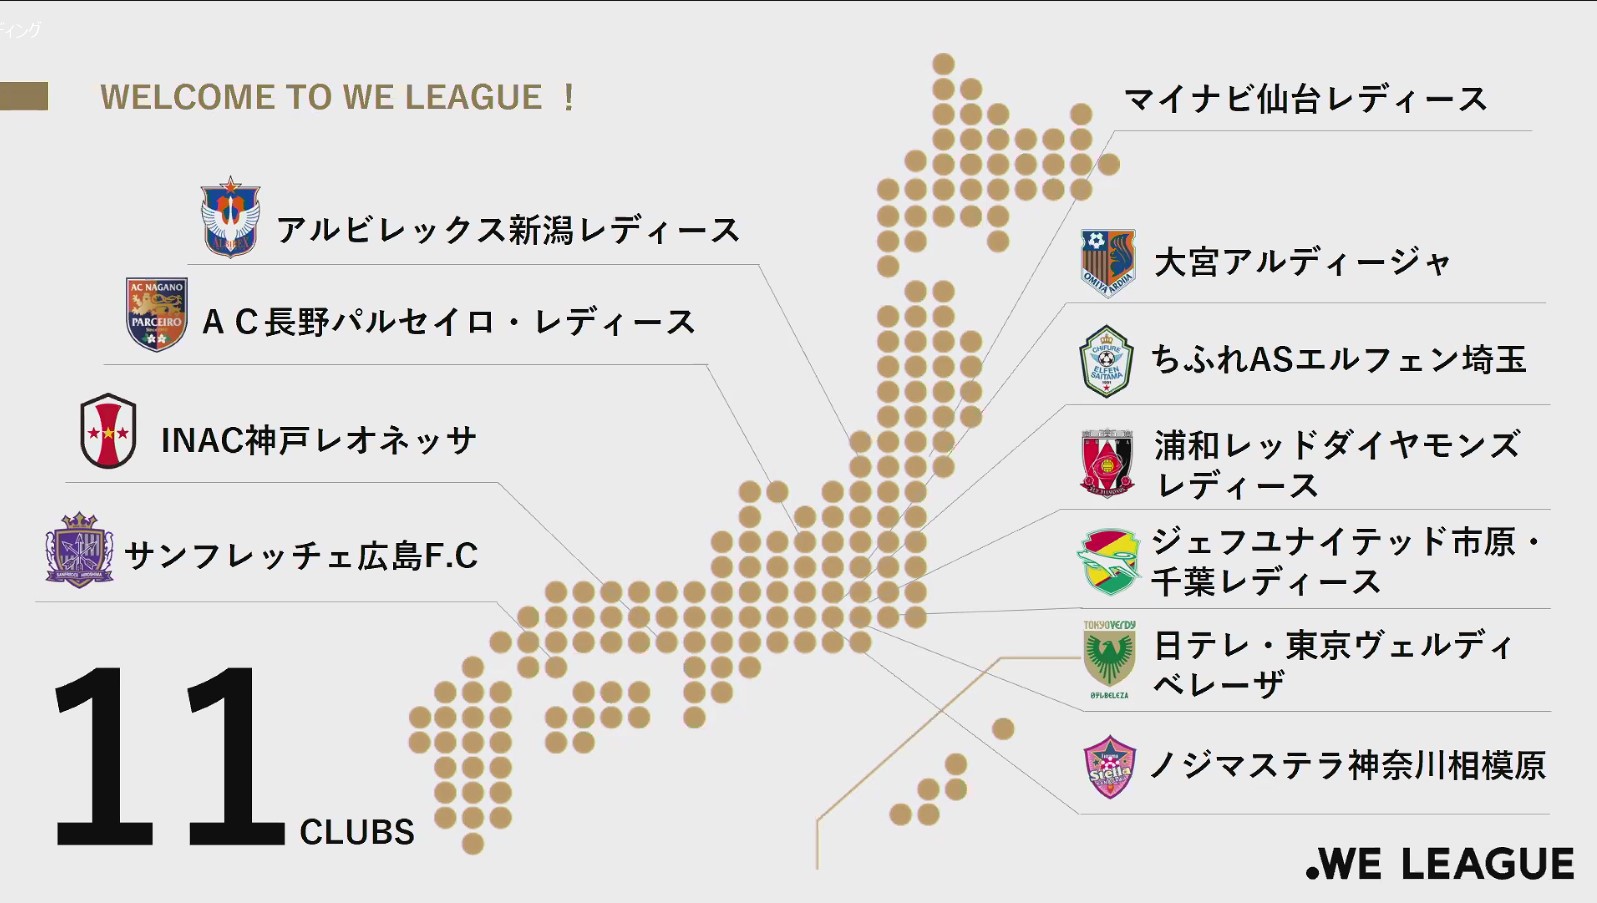 Weリーグ 気になるトピックスまとめ 最低年俸は 昇降格は 放送は 日本初の女子プロサッカー 来秋開幕11チーム決定 サカノワ